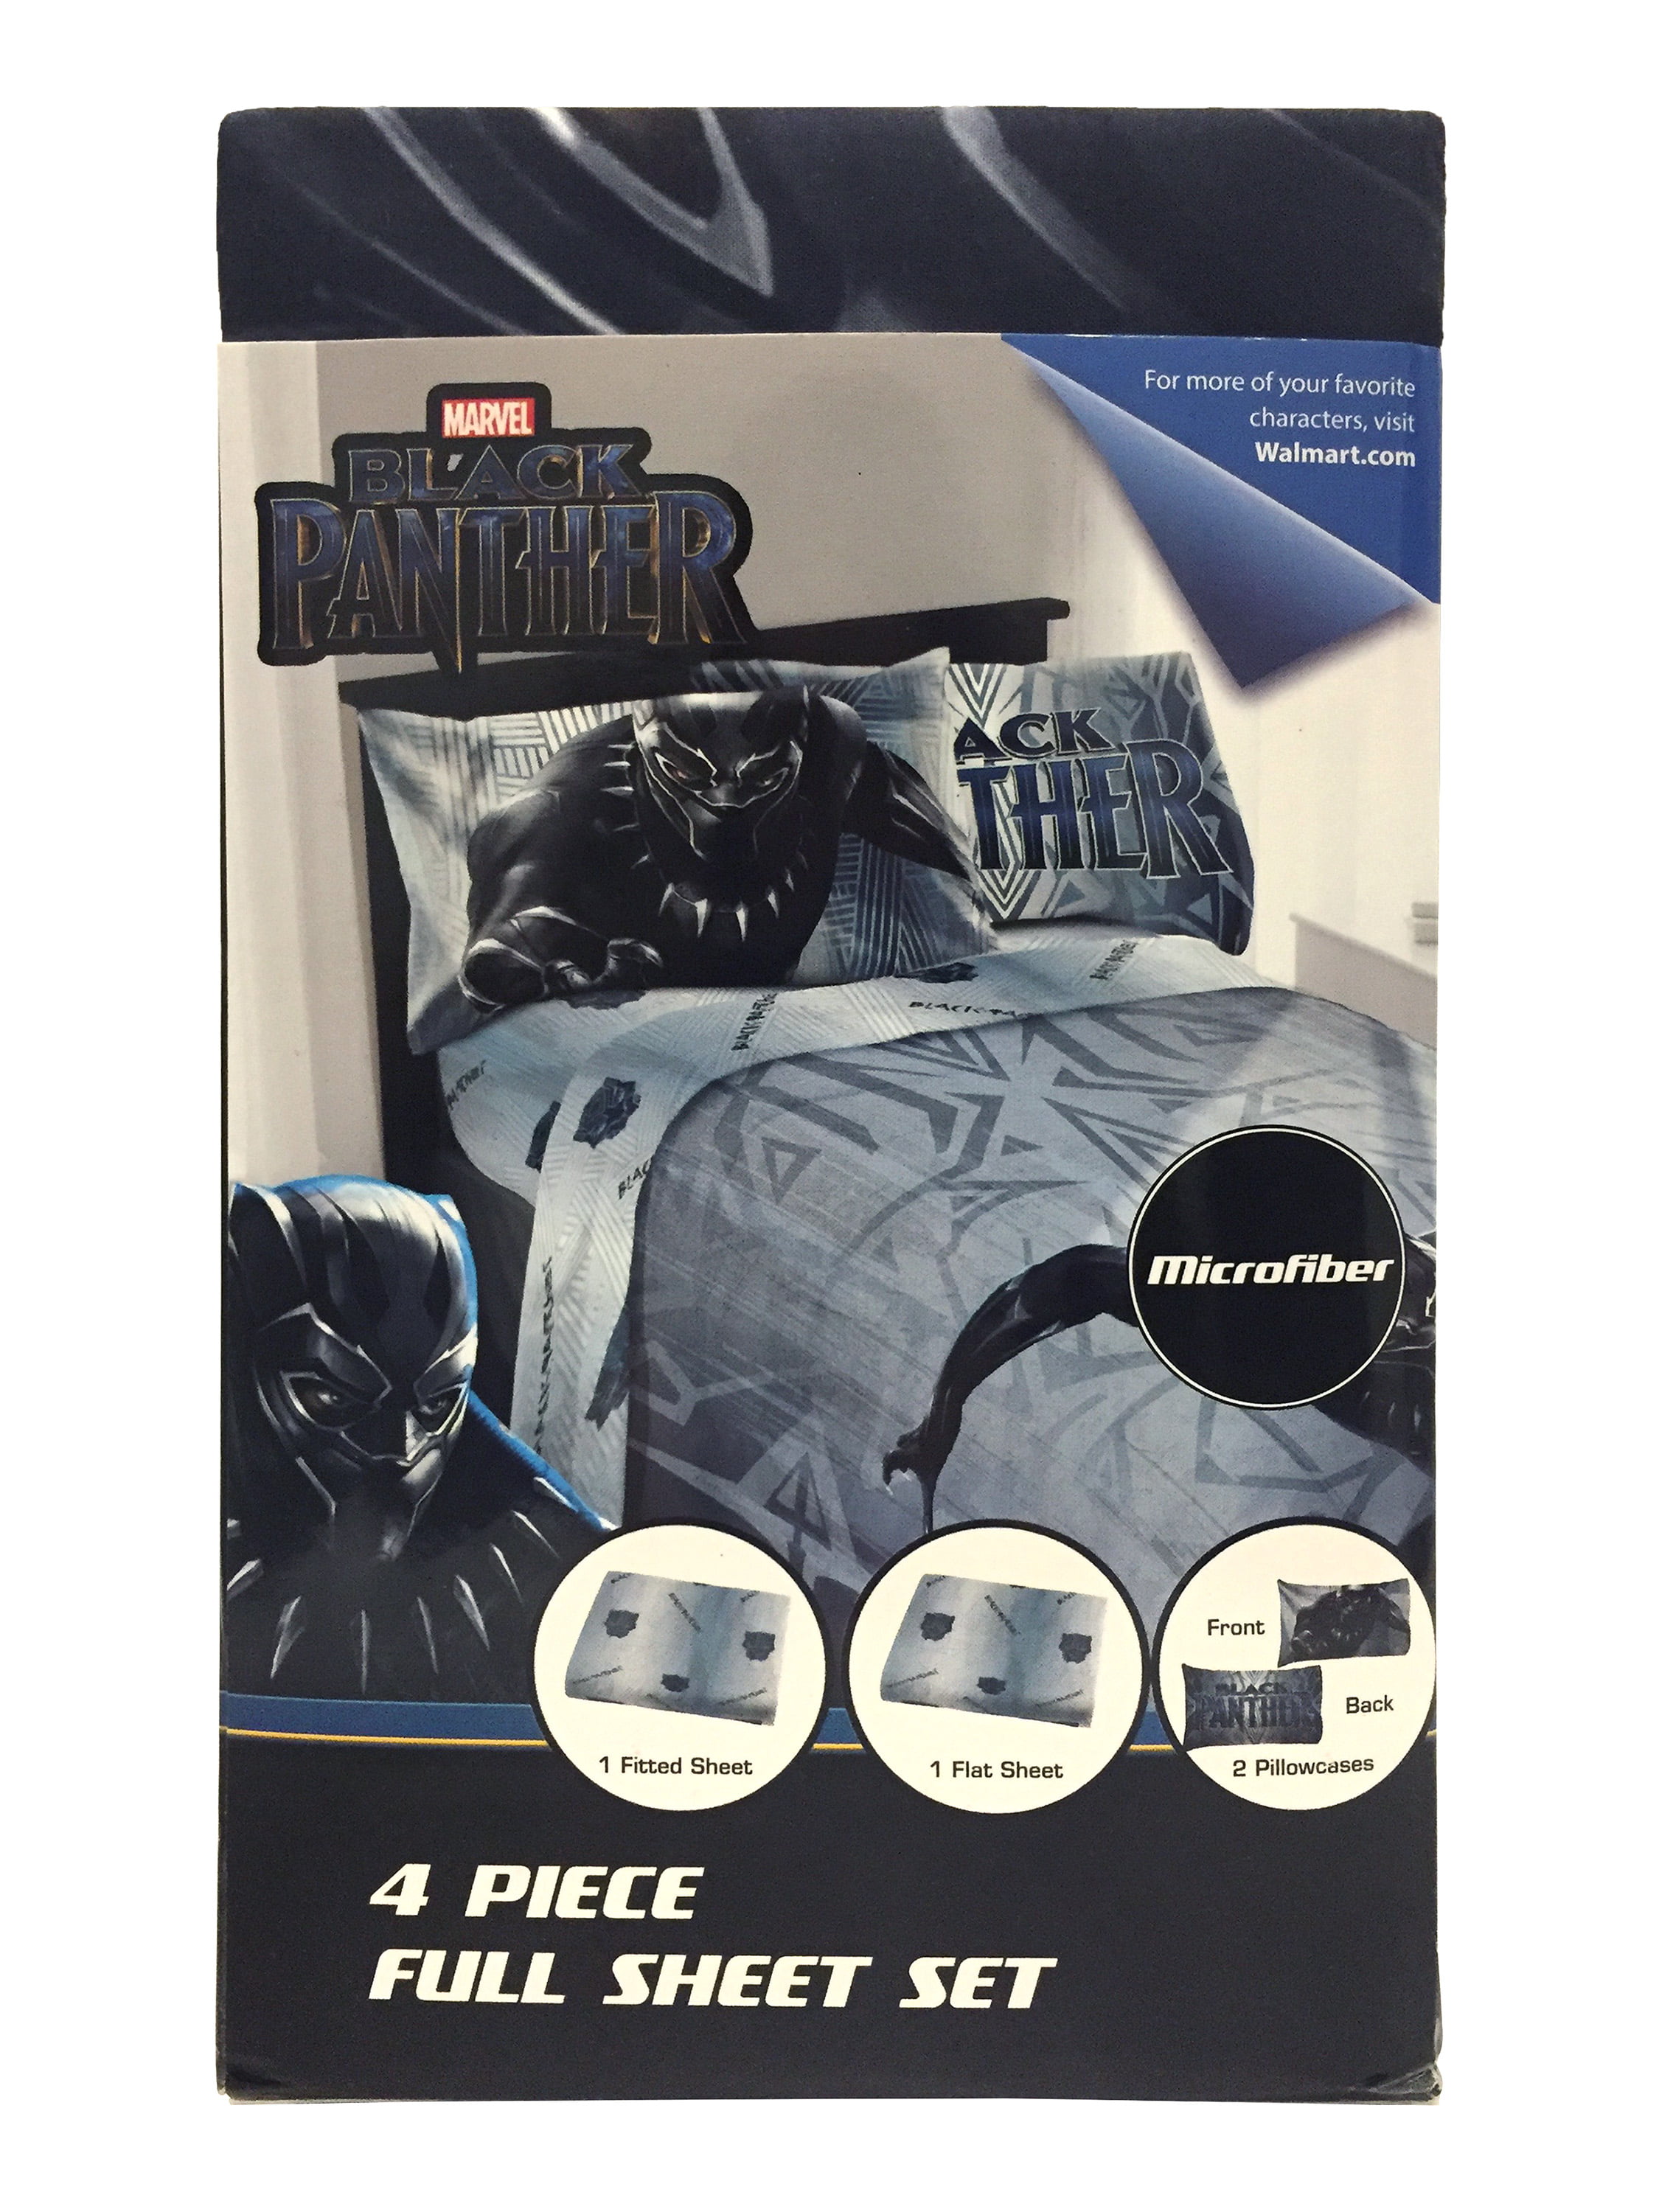 Marvel Black Panther Bedding Sheet Set Walmart Com Walmart Com